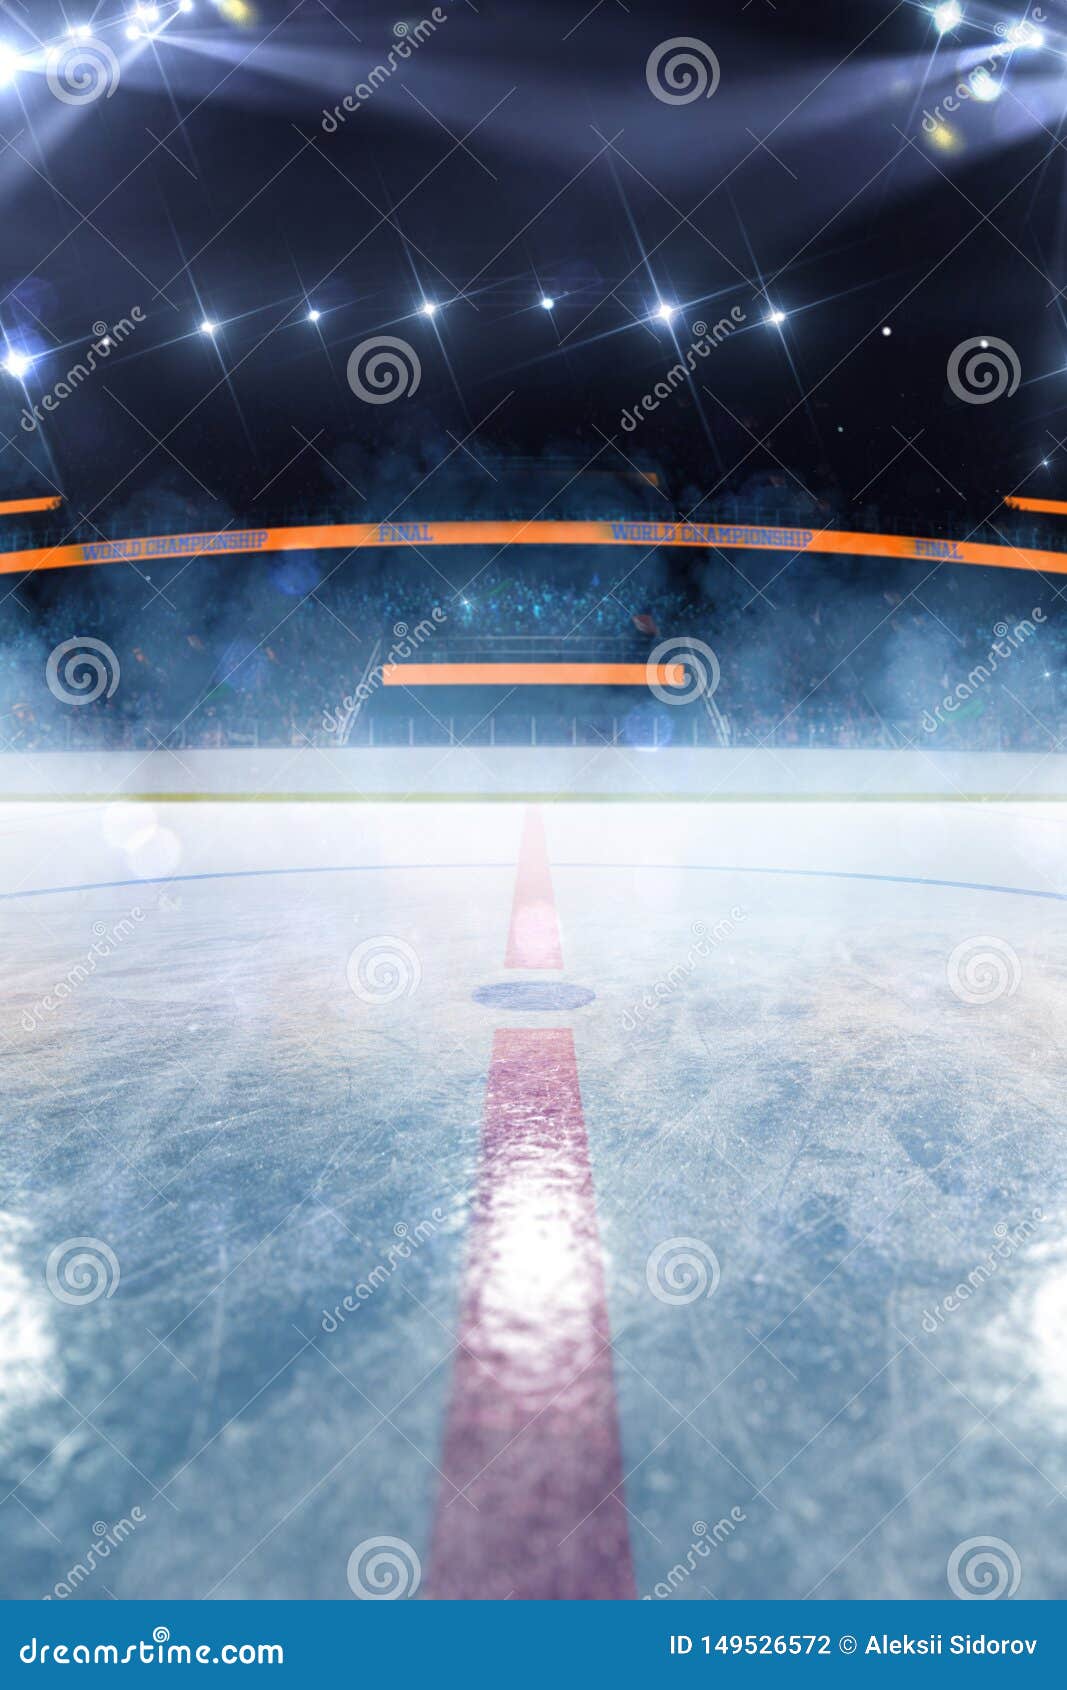 Стадион лед. Empty Ice Rink Arena. Хоккейный стадион. Хоккейный каток. Хоккейное поле.